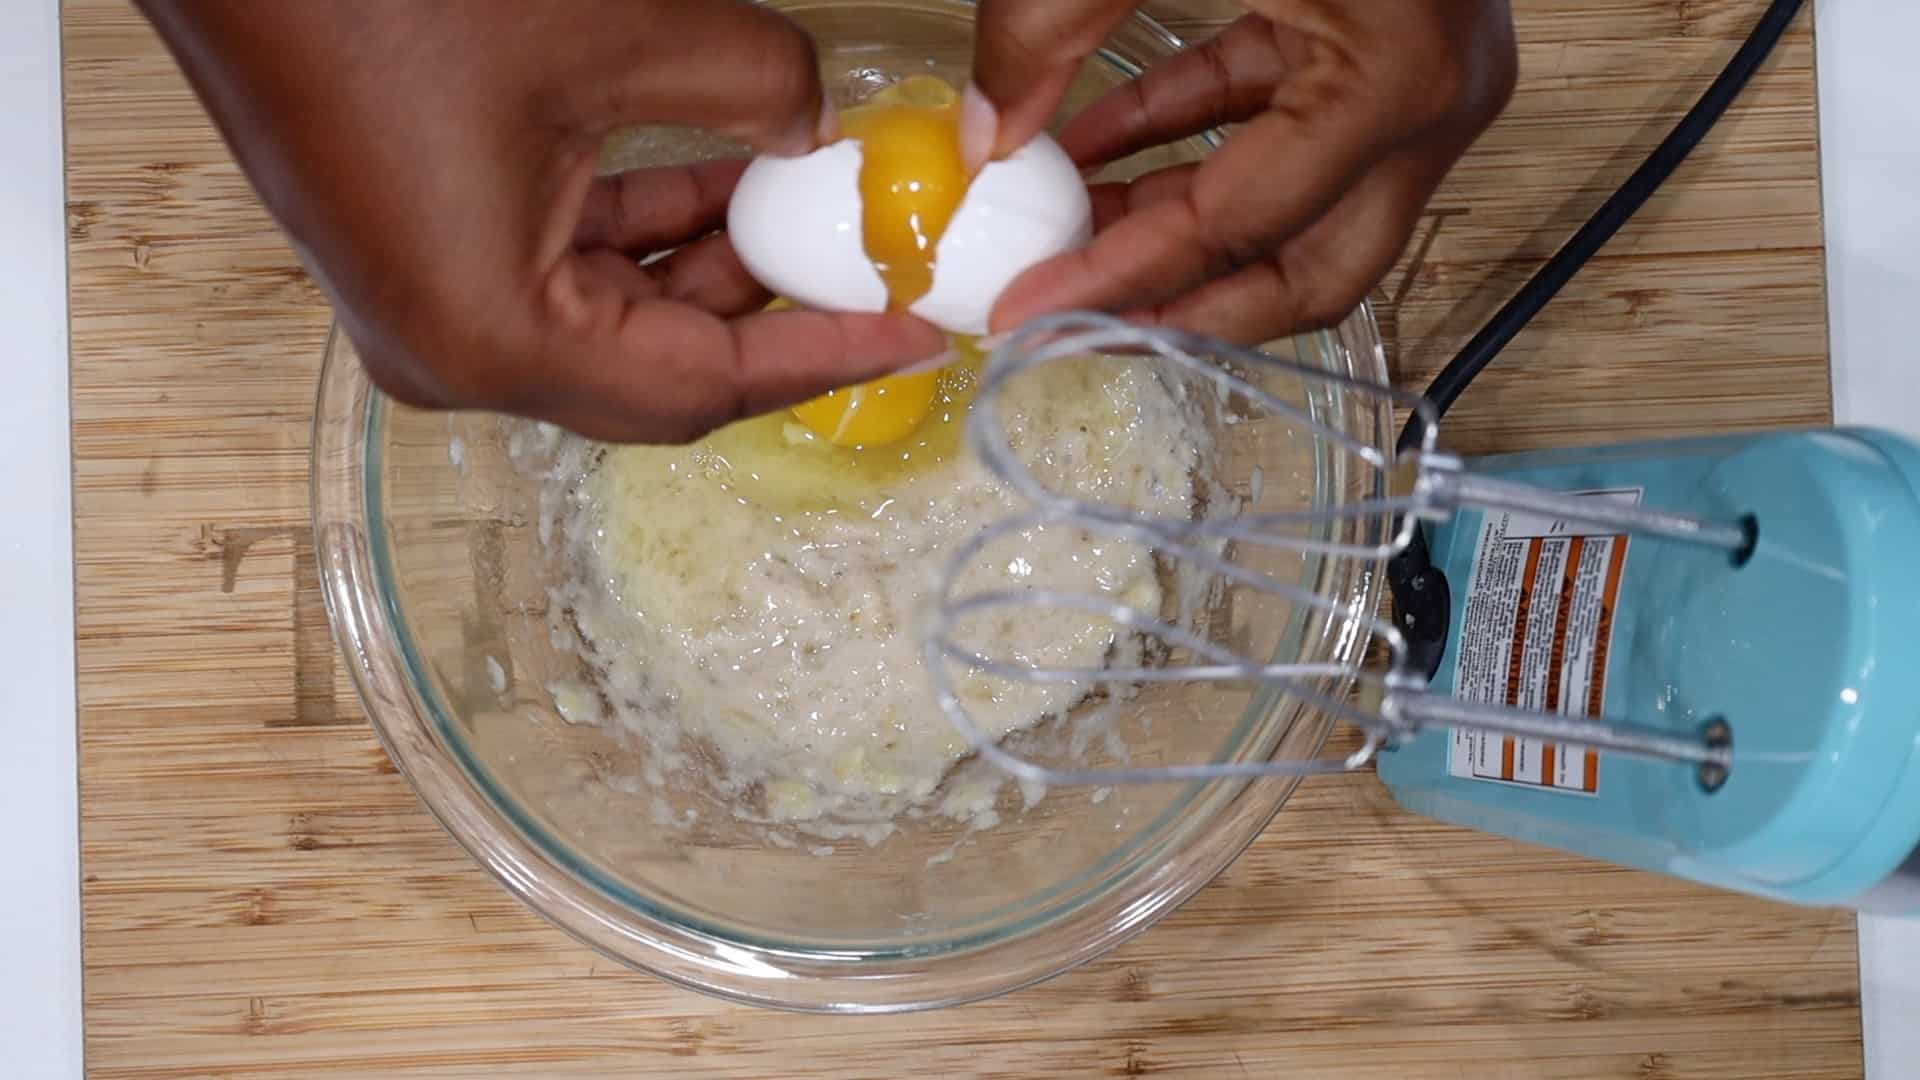 Adding Eggs to smashed banana